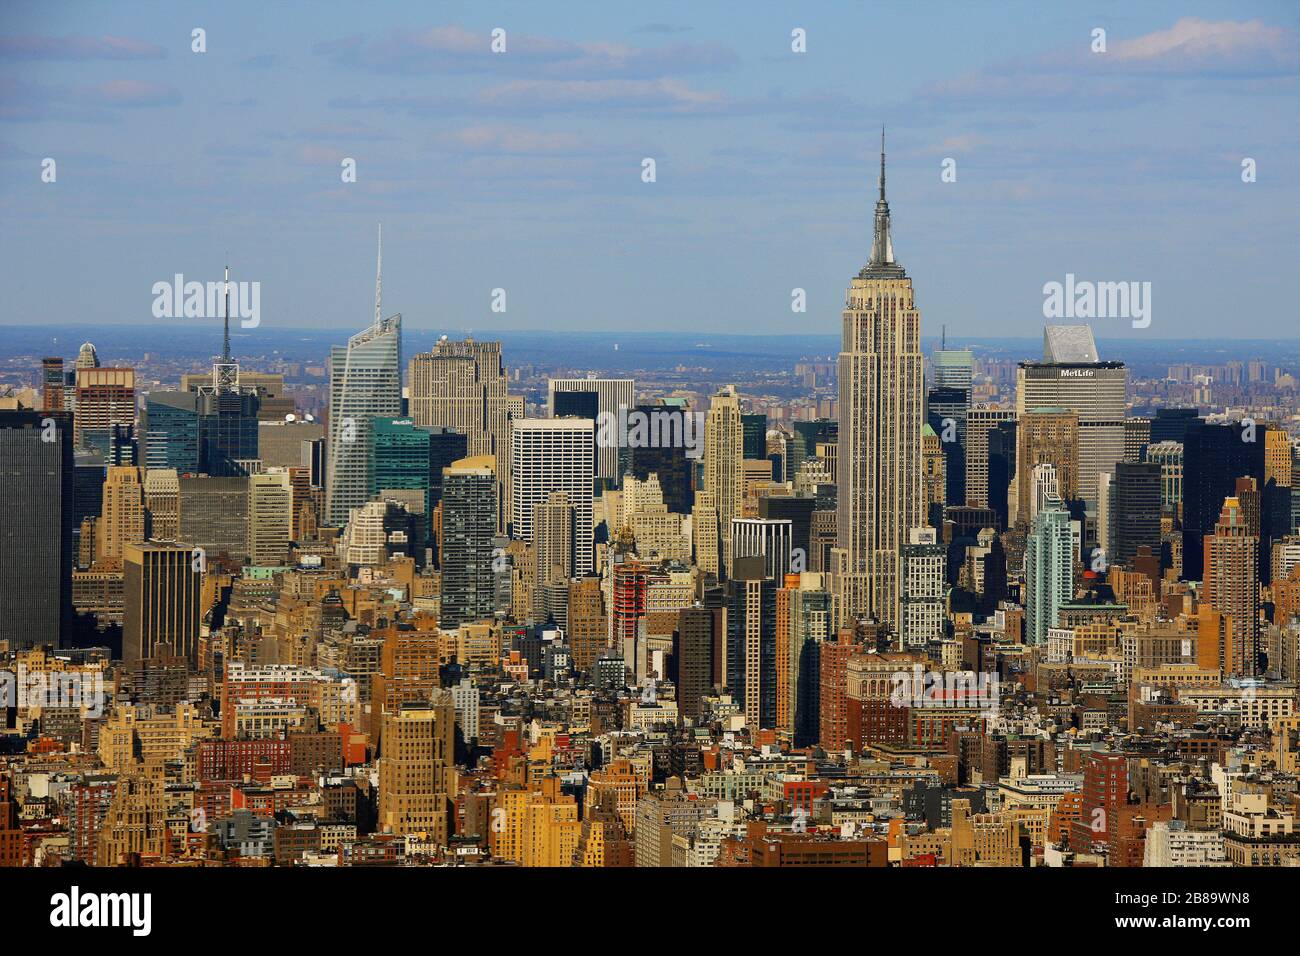 Midtown-Viertel in Manhattan, mit Finanzviertel und Empire State Building und Bank of America Tower, 12.04.2009, Luftaufnahme, USA, New York City Stockfoto